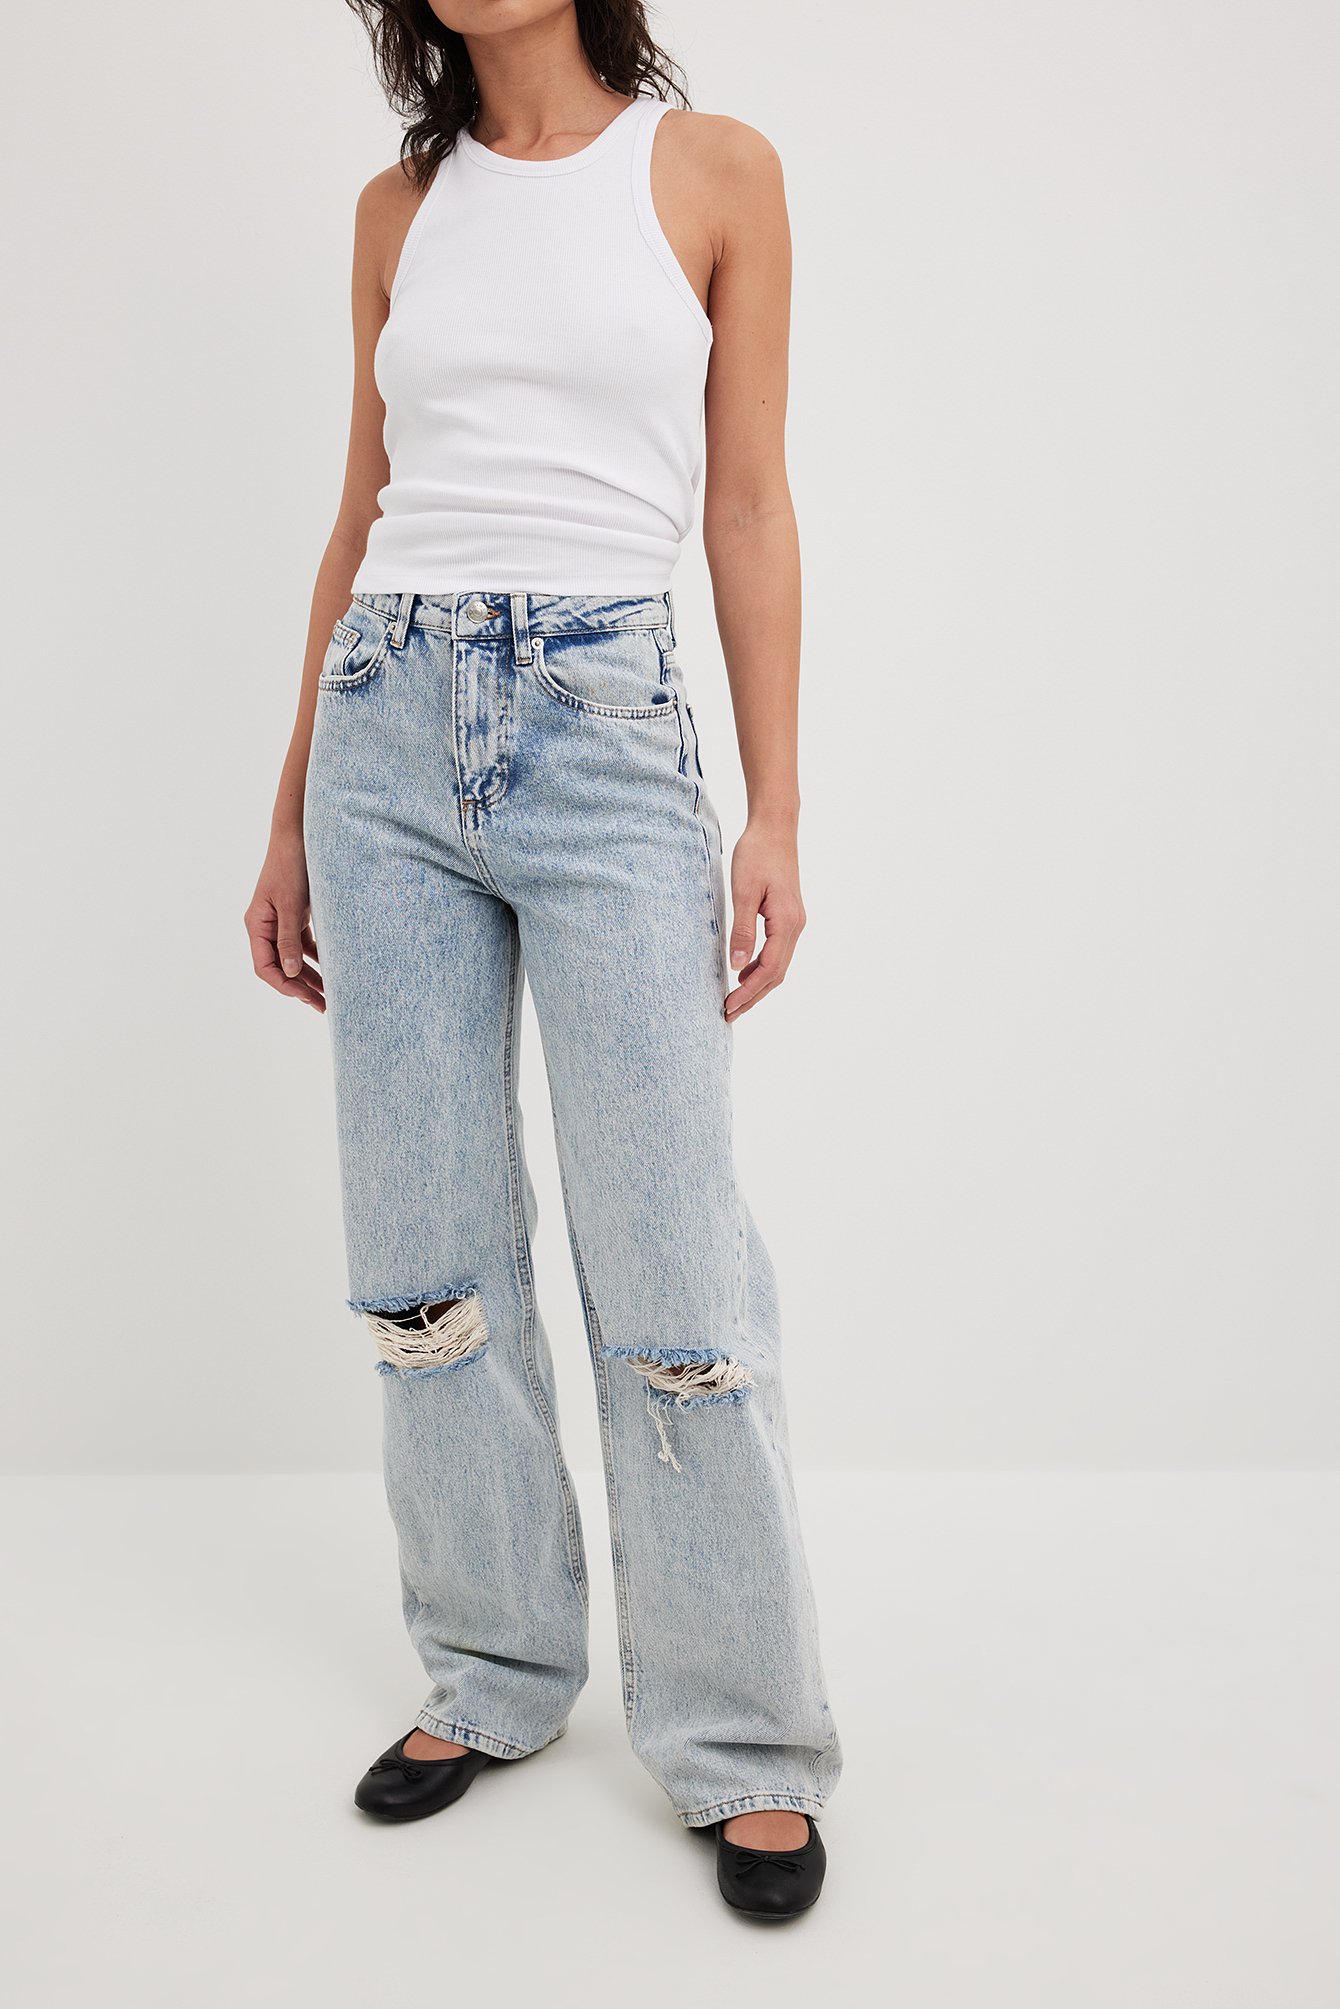 Spektakel angst Kerel Ripped jeans • Dames ripped jeans online kopen | NA-KD